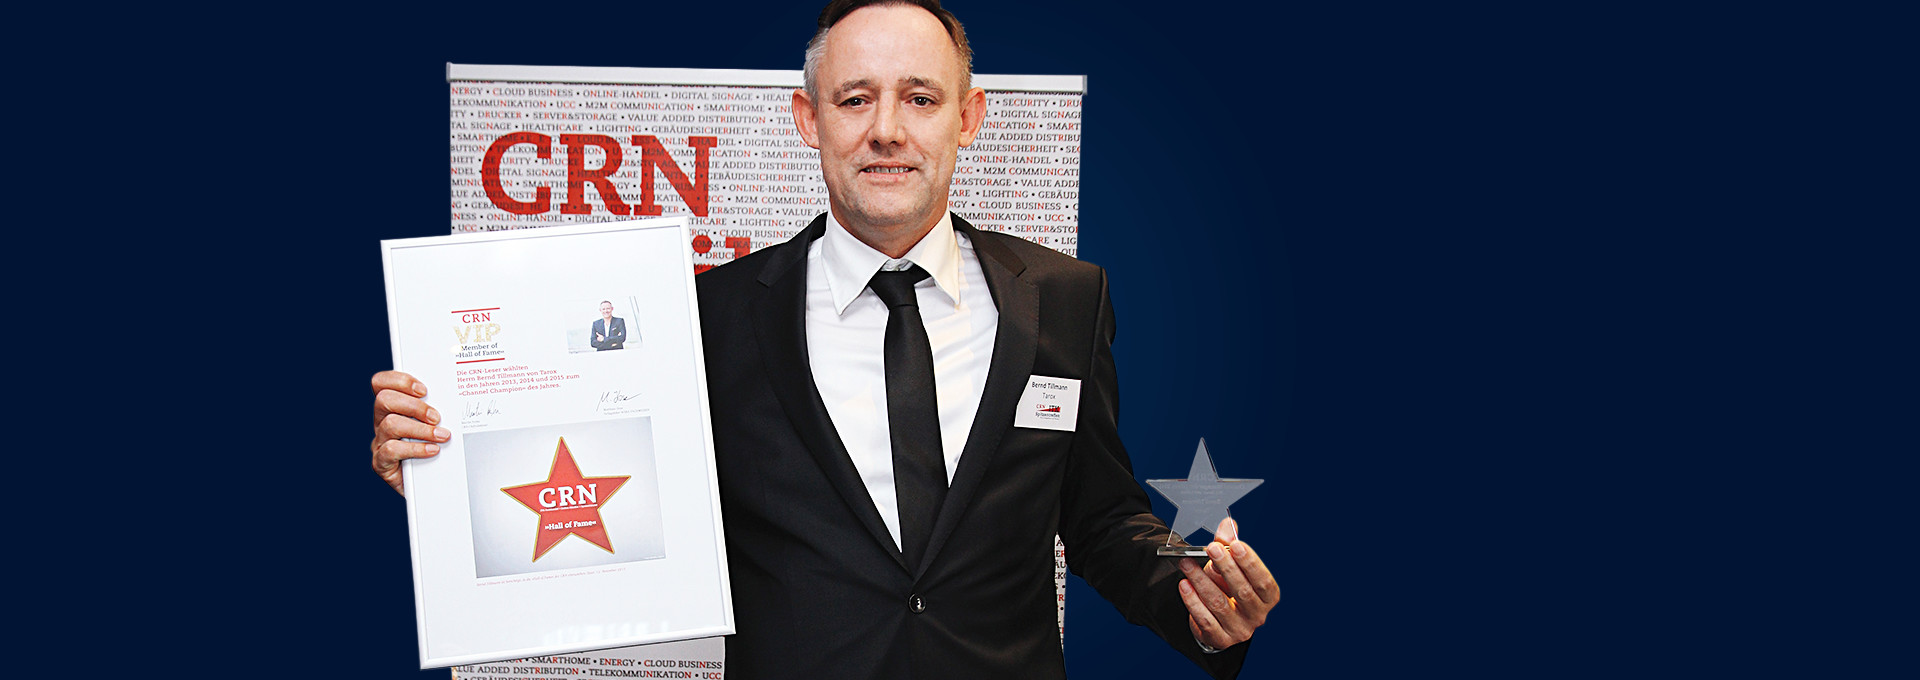 Bernd Tillmann nimmt die CRN-Auszeichnung entgegen.